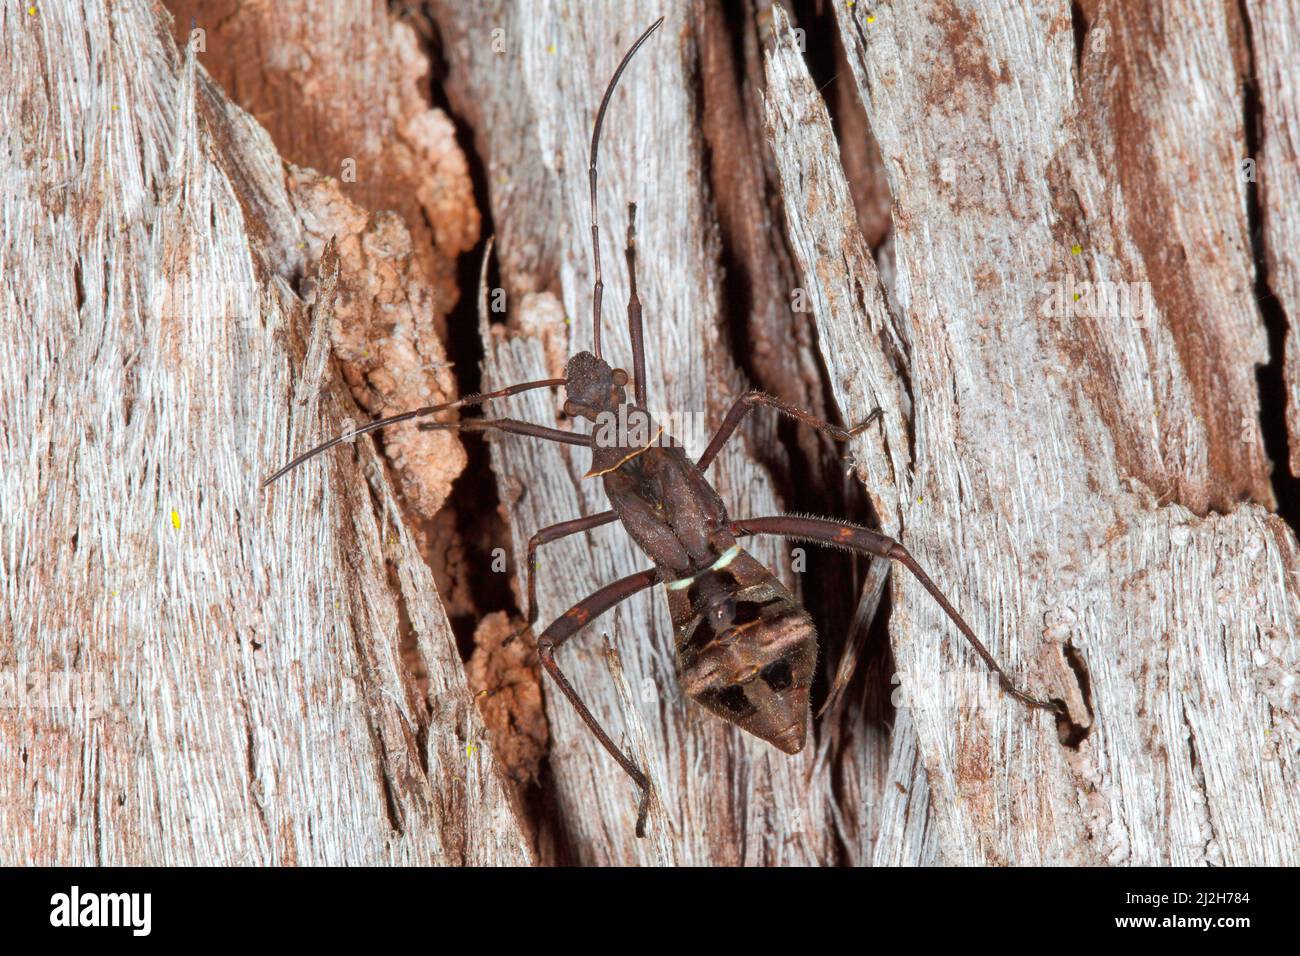 Insecto que chupa la vaina, serripes de Riptortus. También conocido como Brown Bean Bug. Ninfa o instar. Coffs Harbour, Nueva Gales del Sur, Australia Foto de stock